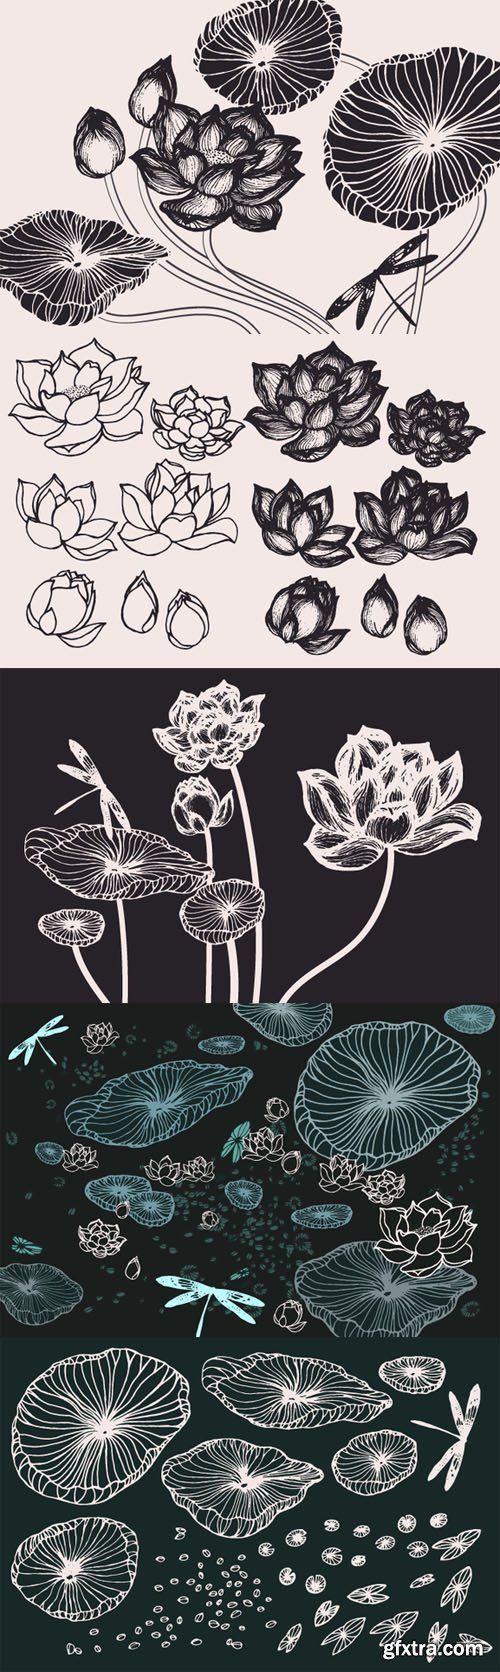 Lotus Flowers & Leaves Drawings - CM 131007